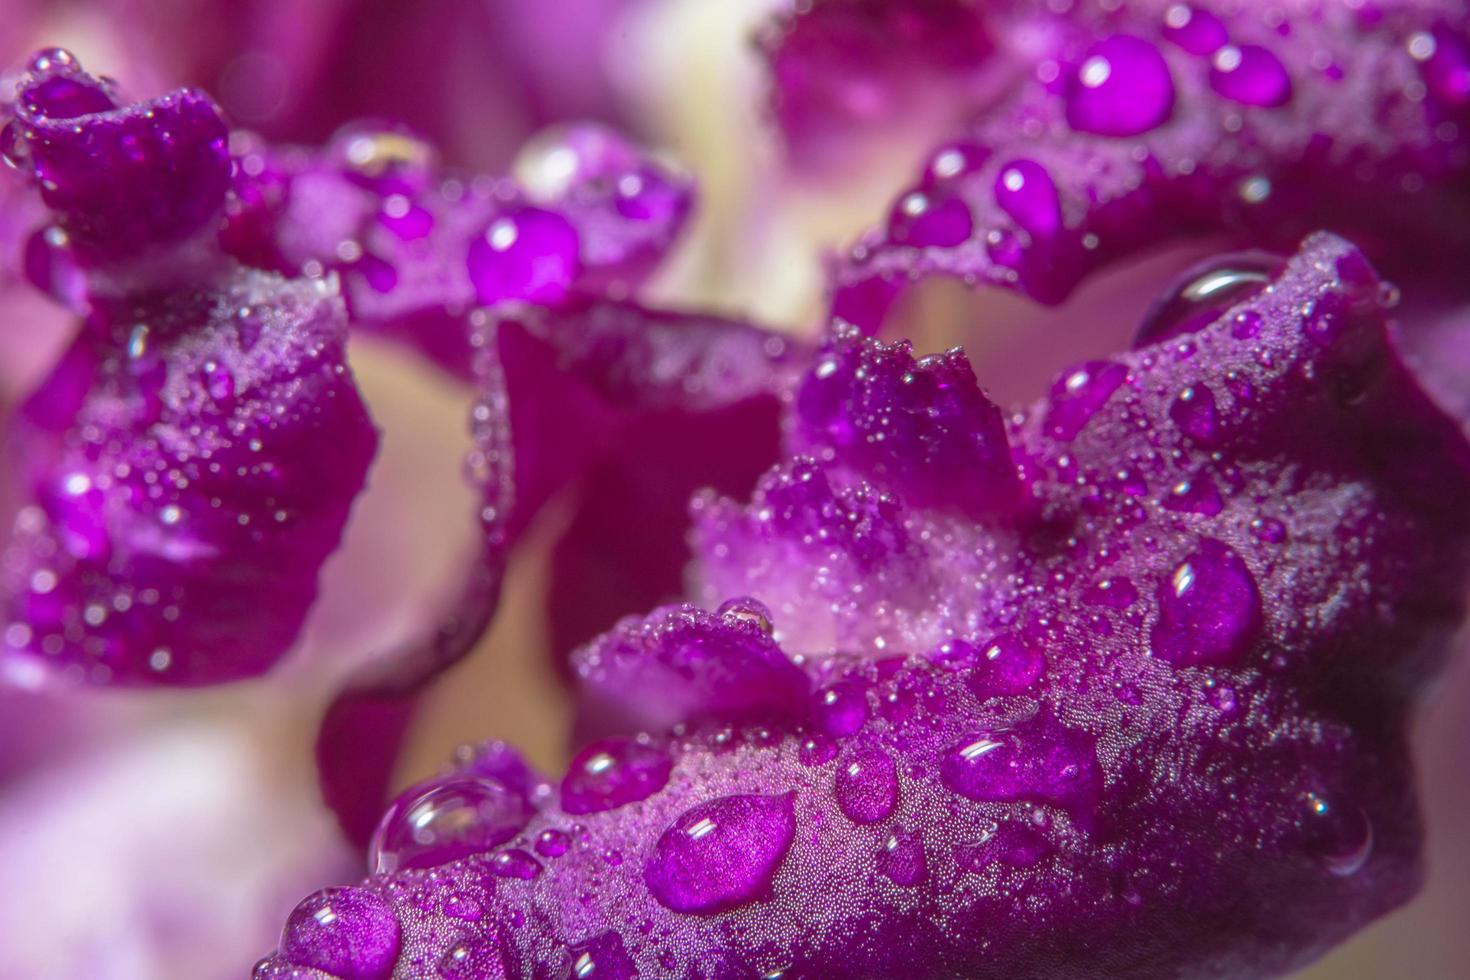 vattendroppar på lila orkidéblad foto